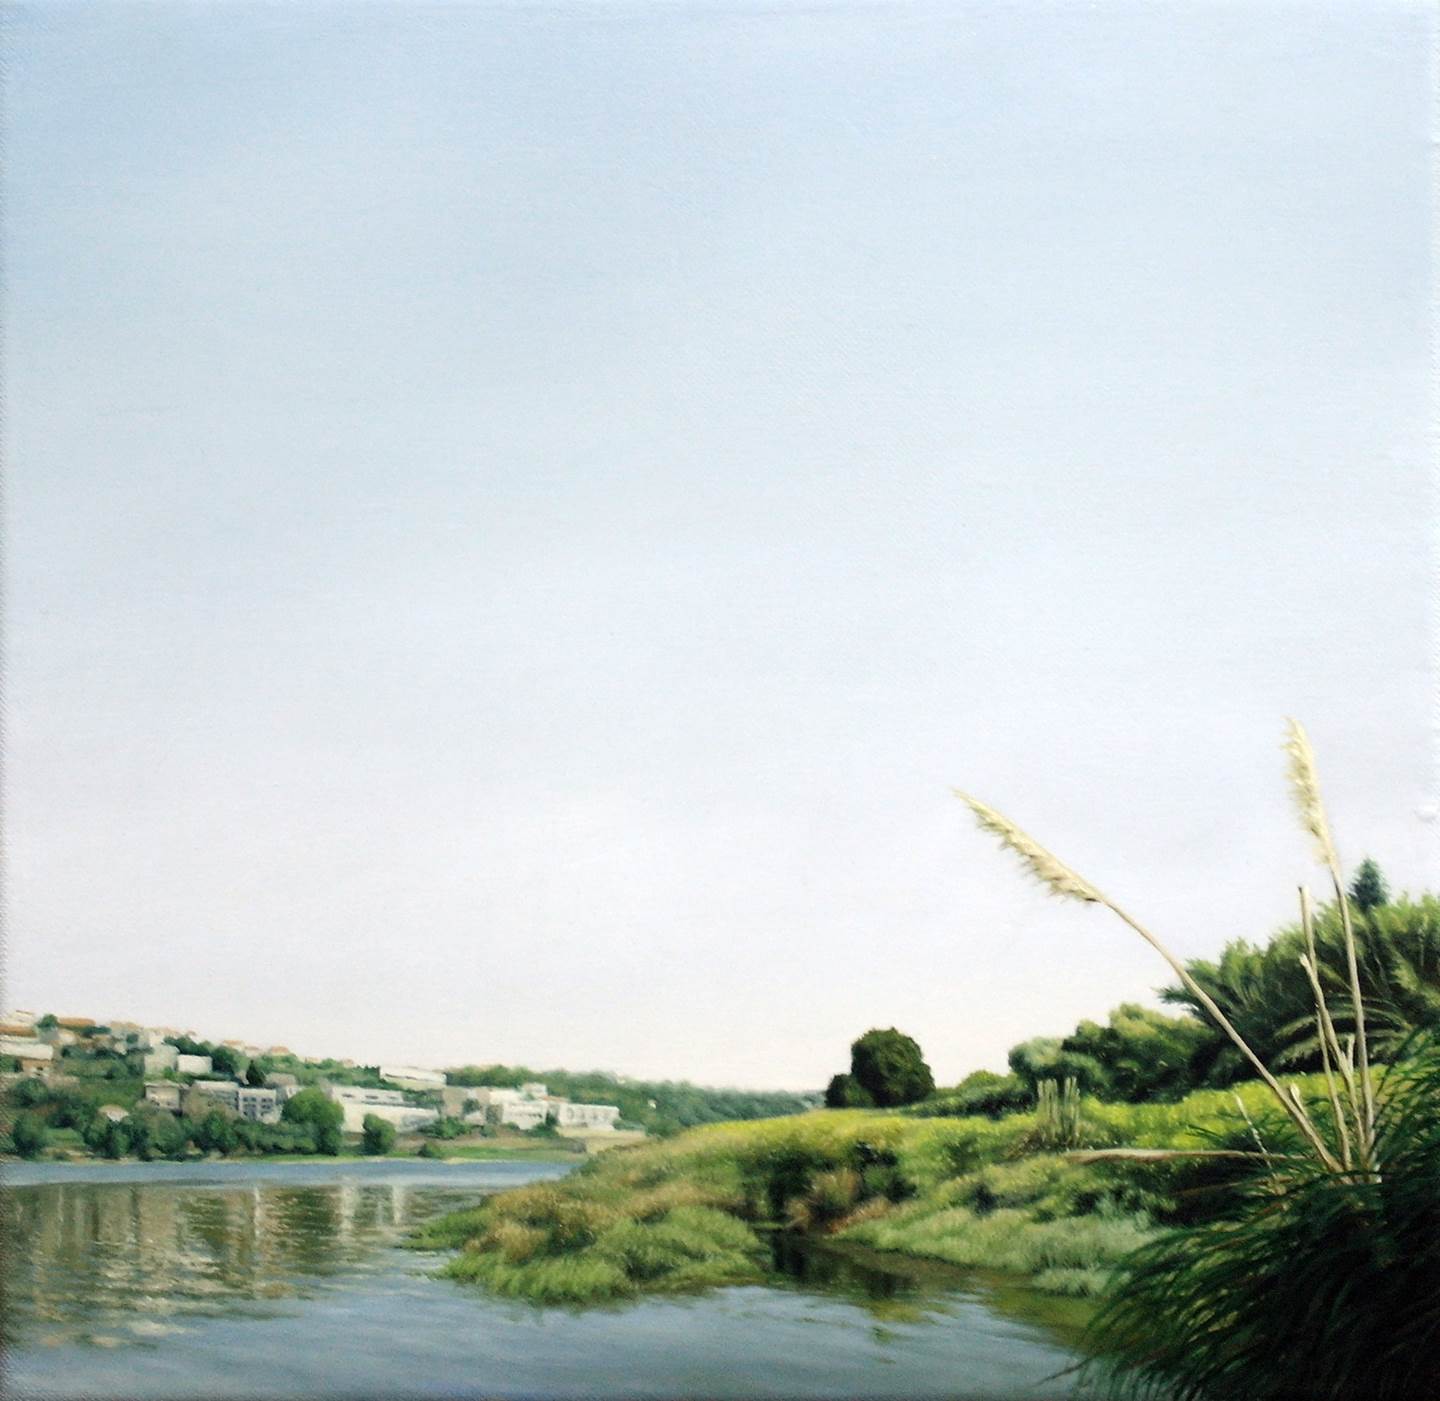 Tiro - Memento 9, original Landscape Canvas Painting by Alexandre Coxo